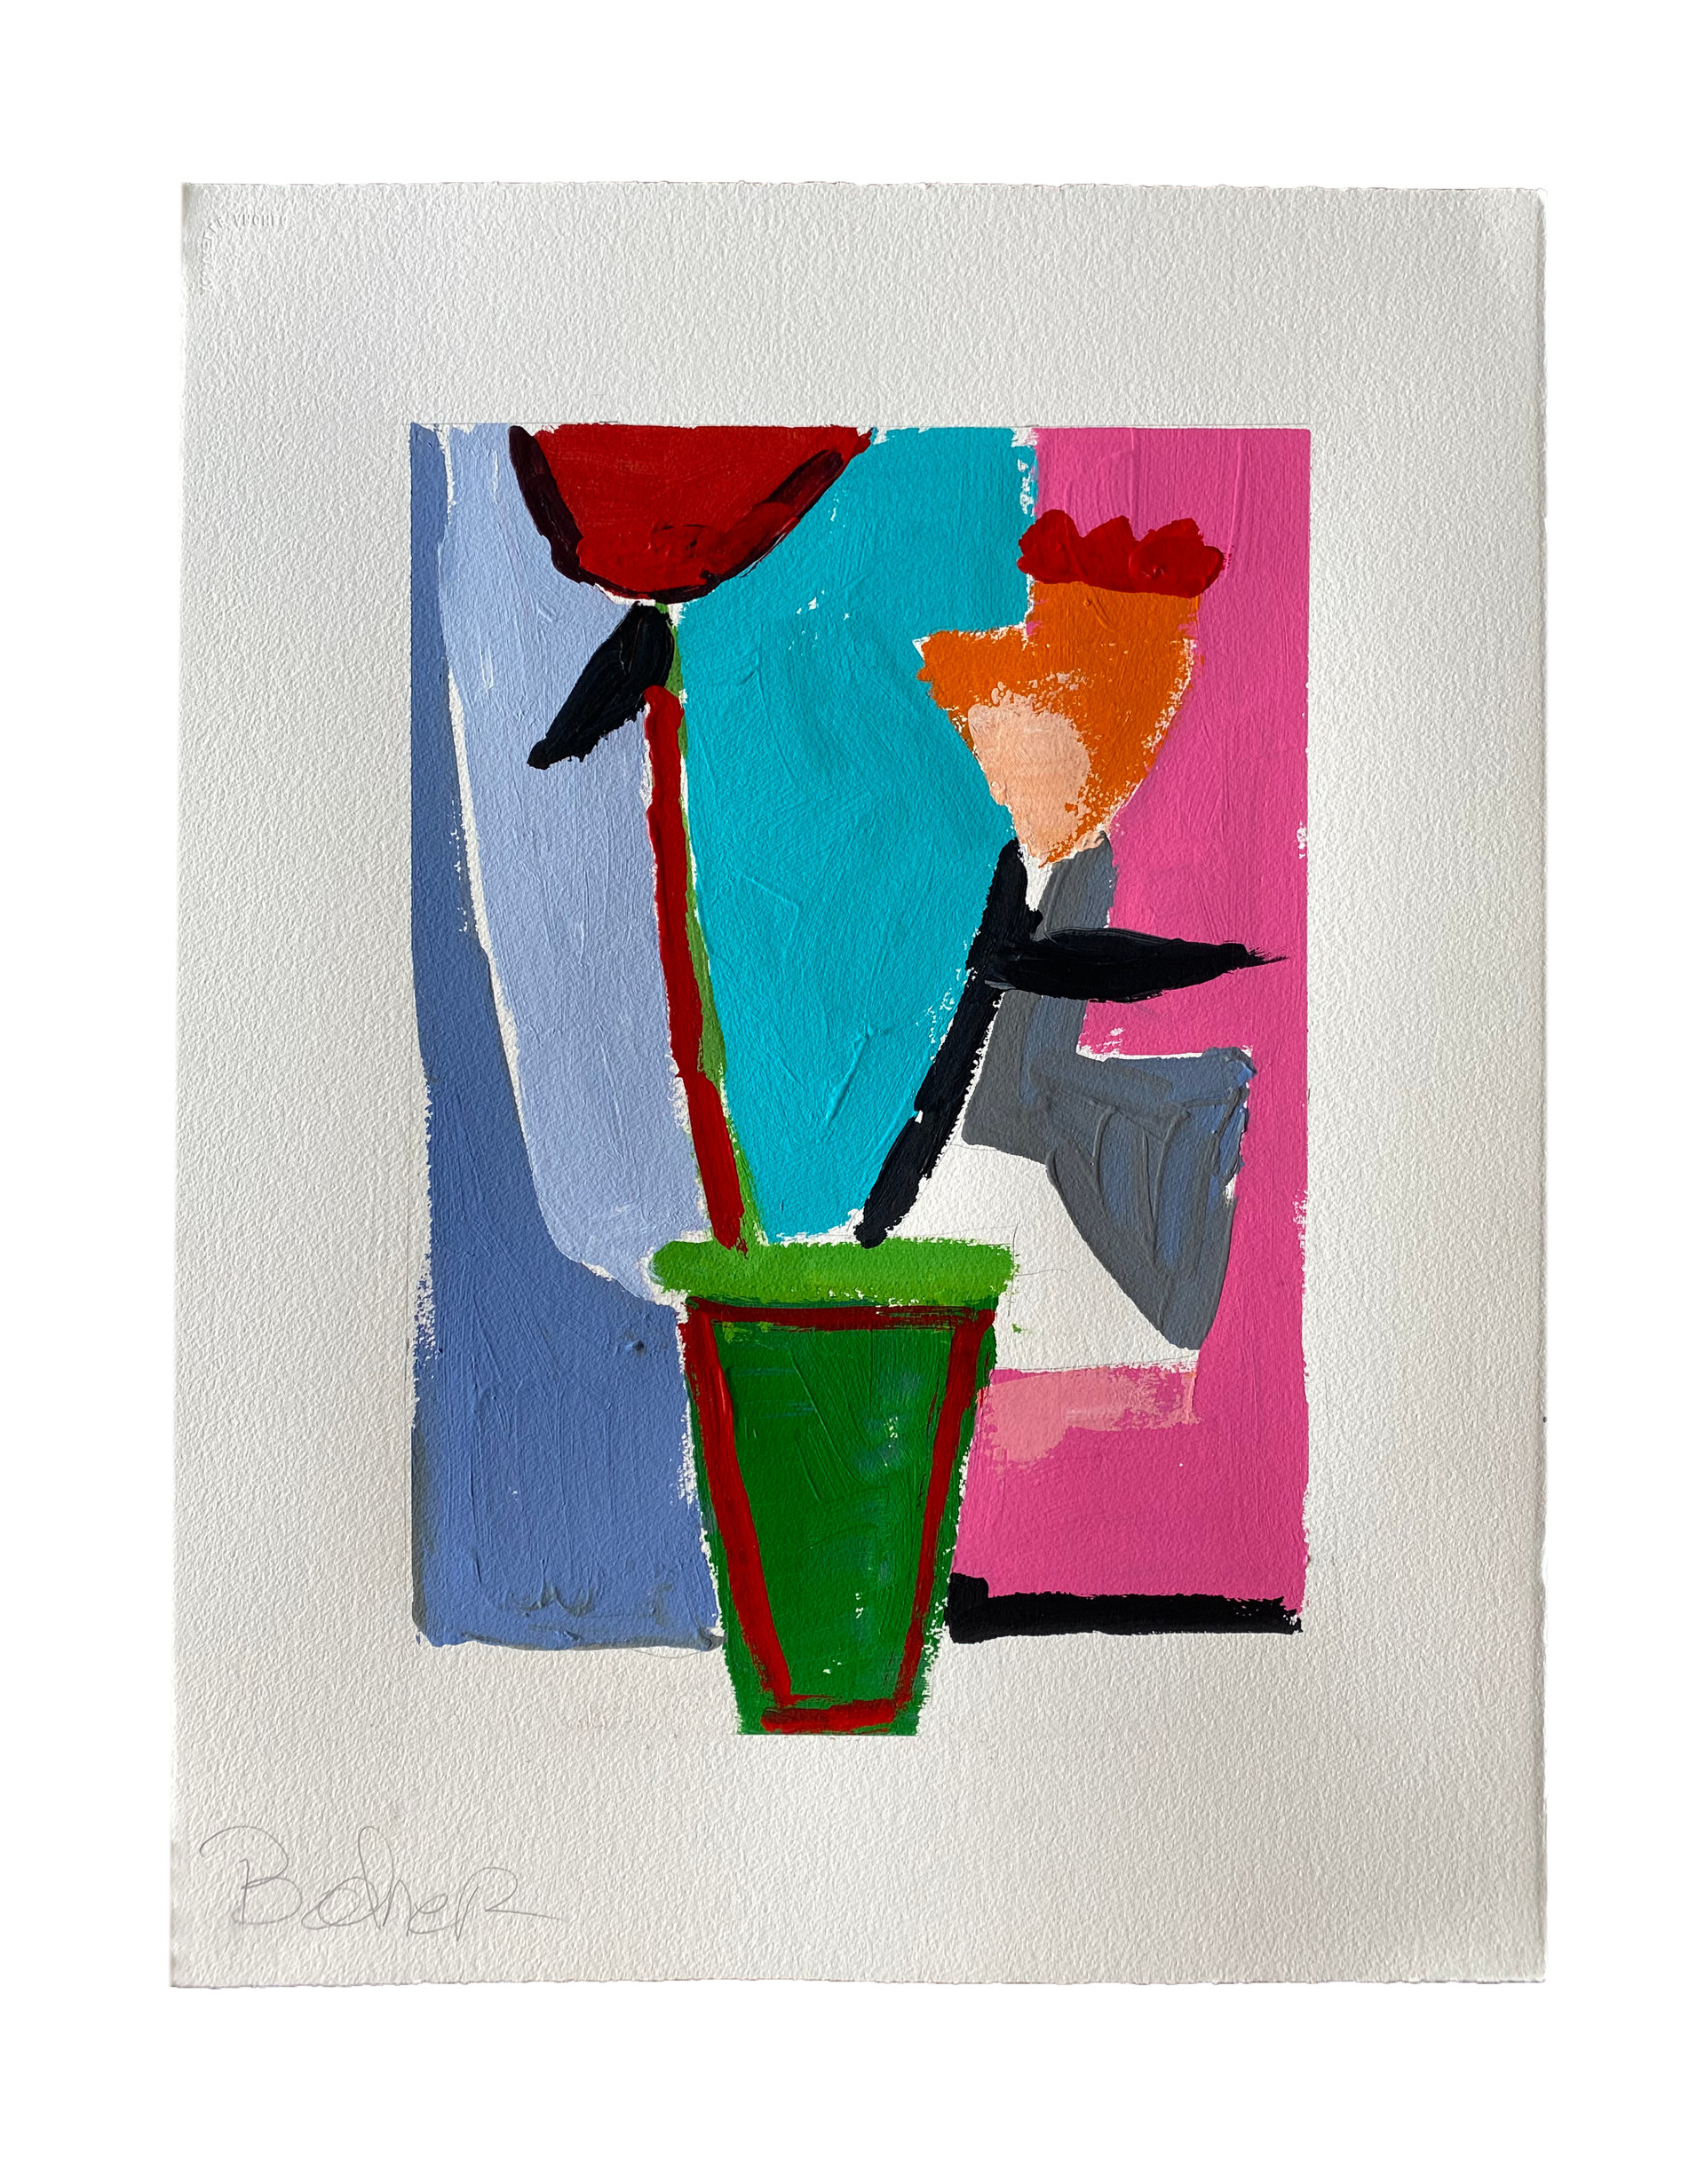 Chroma Vase III by Gary Bodner